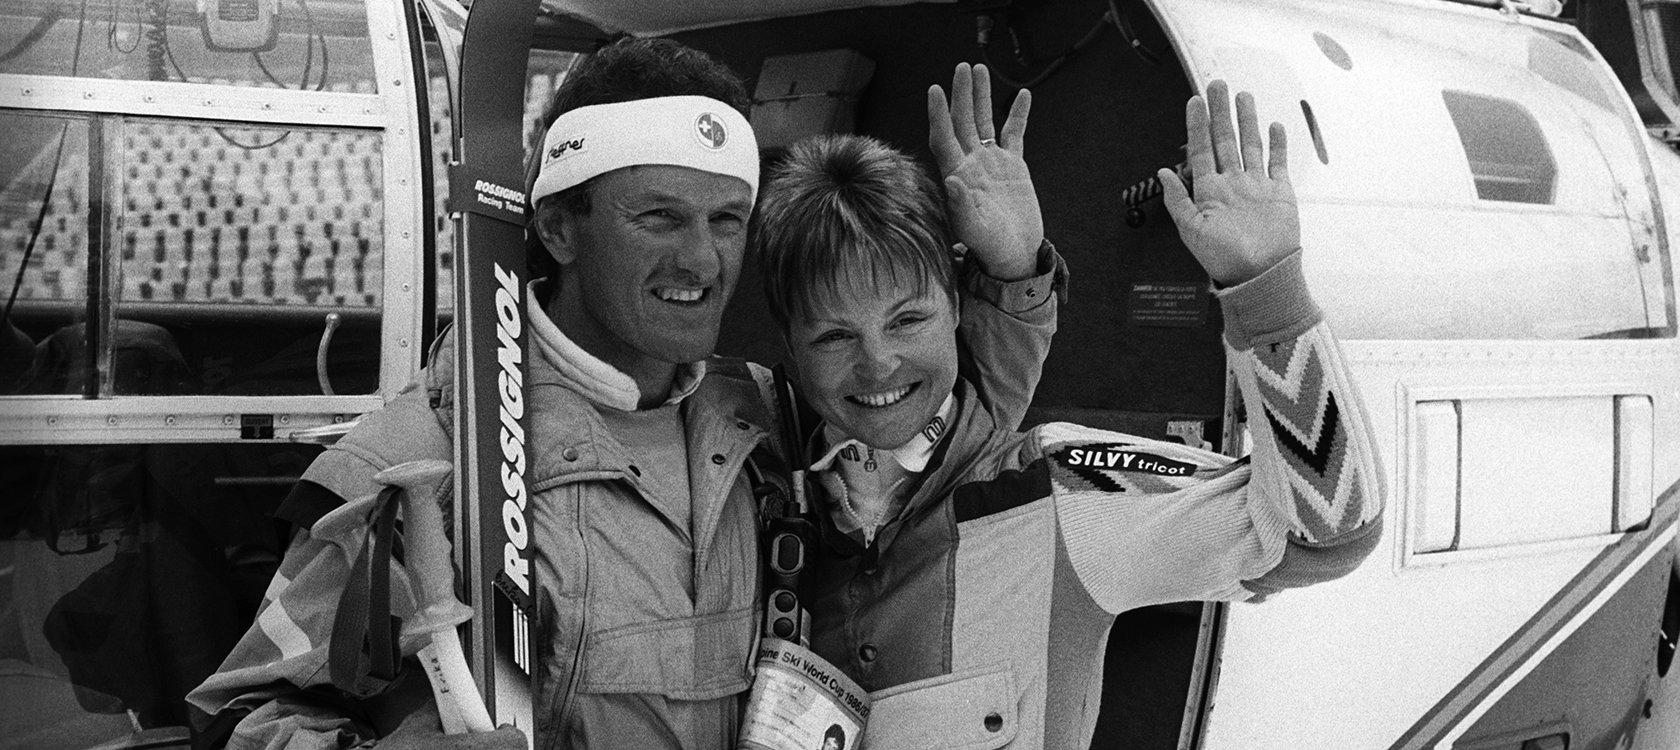 Former Swiss Ski coach Reymond dies age 69